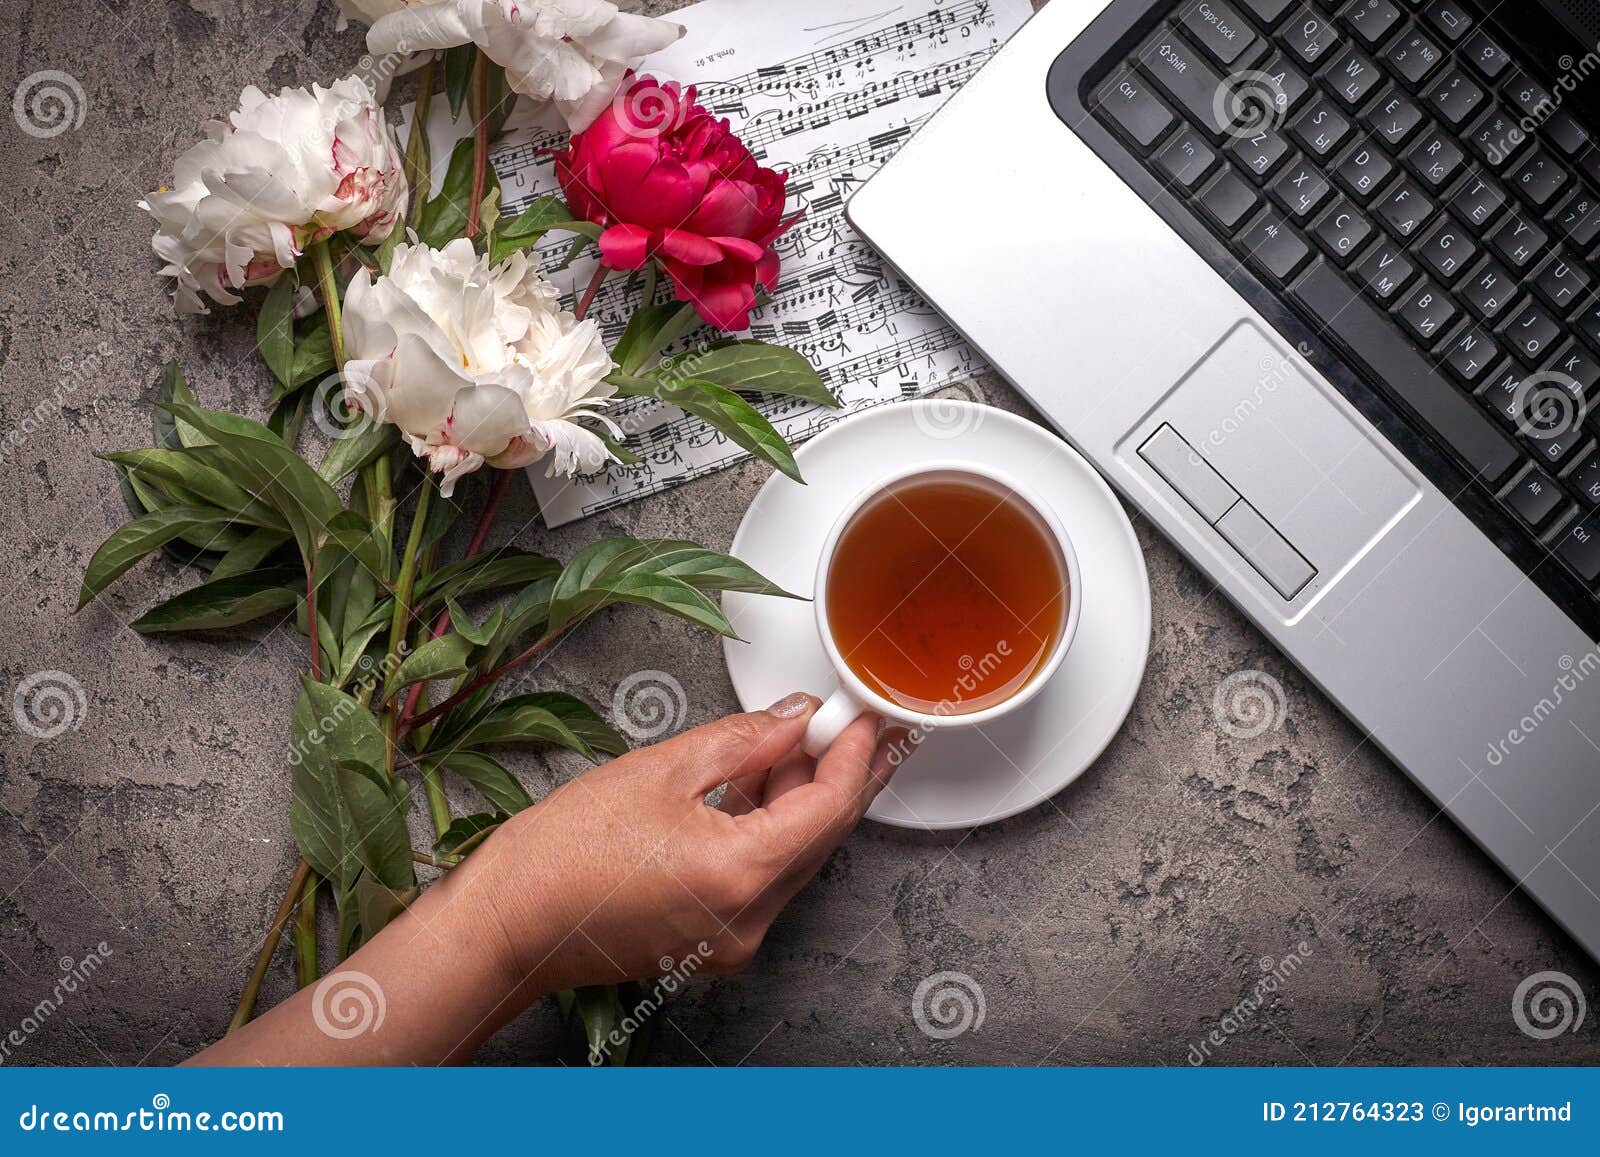 Cà phê, hoa mẫu đơn và laptop trên nền xám hoài cổ - Hãy cùng khám phá chiếc laptop tuyệt đẹp bị lãng quên, đặt cạnh cốc cà phê nóng và bó hoa mẫu đơn trên nền xám hoài cổ. Bức hình này mang lại sự độc đáo và lãng mạn, giúp bạn có thêm động lực làm việc. 